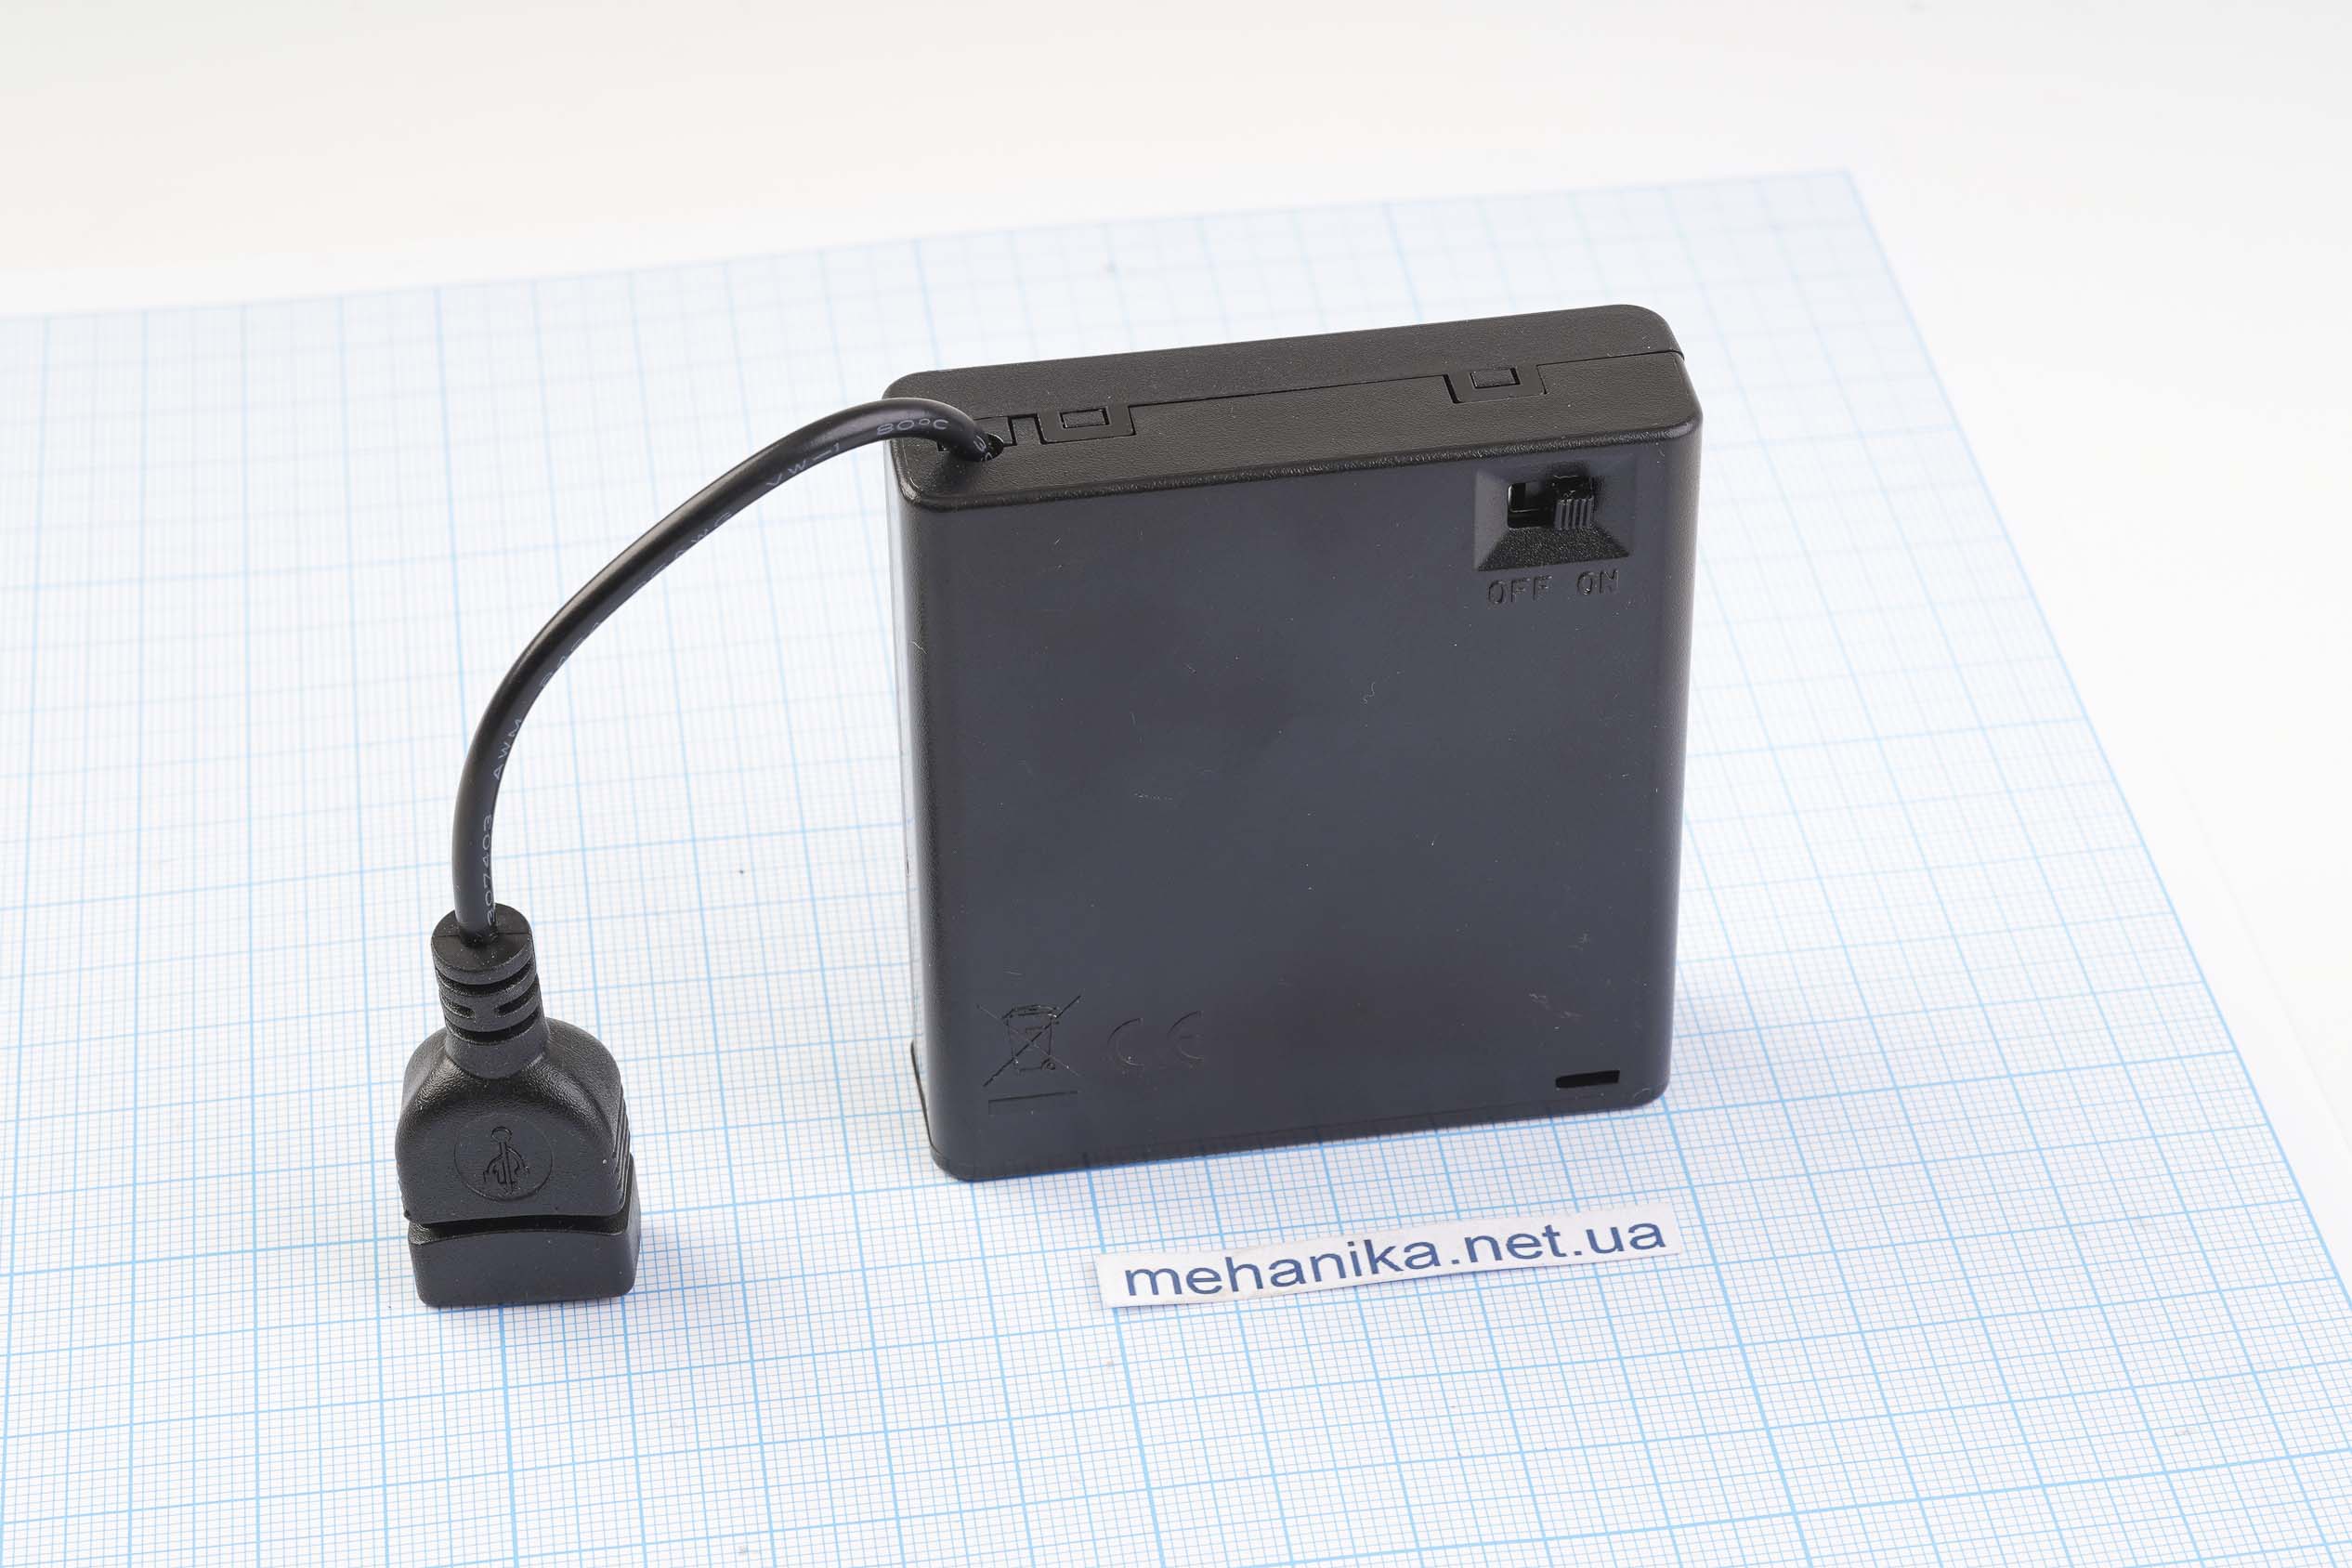 Портативний зарядний пристрій (повербанк/powerbank) на пальчикових батарейках АА з інтерфейсом USB